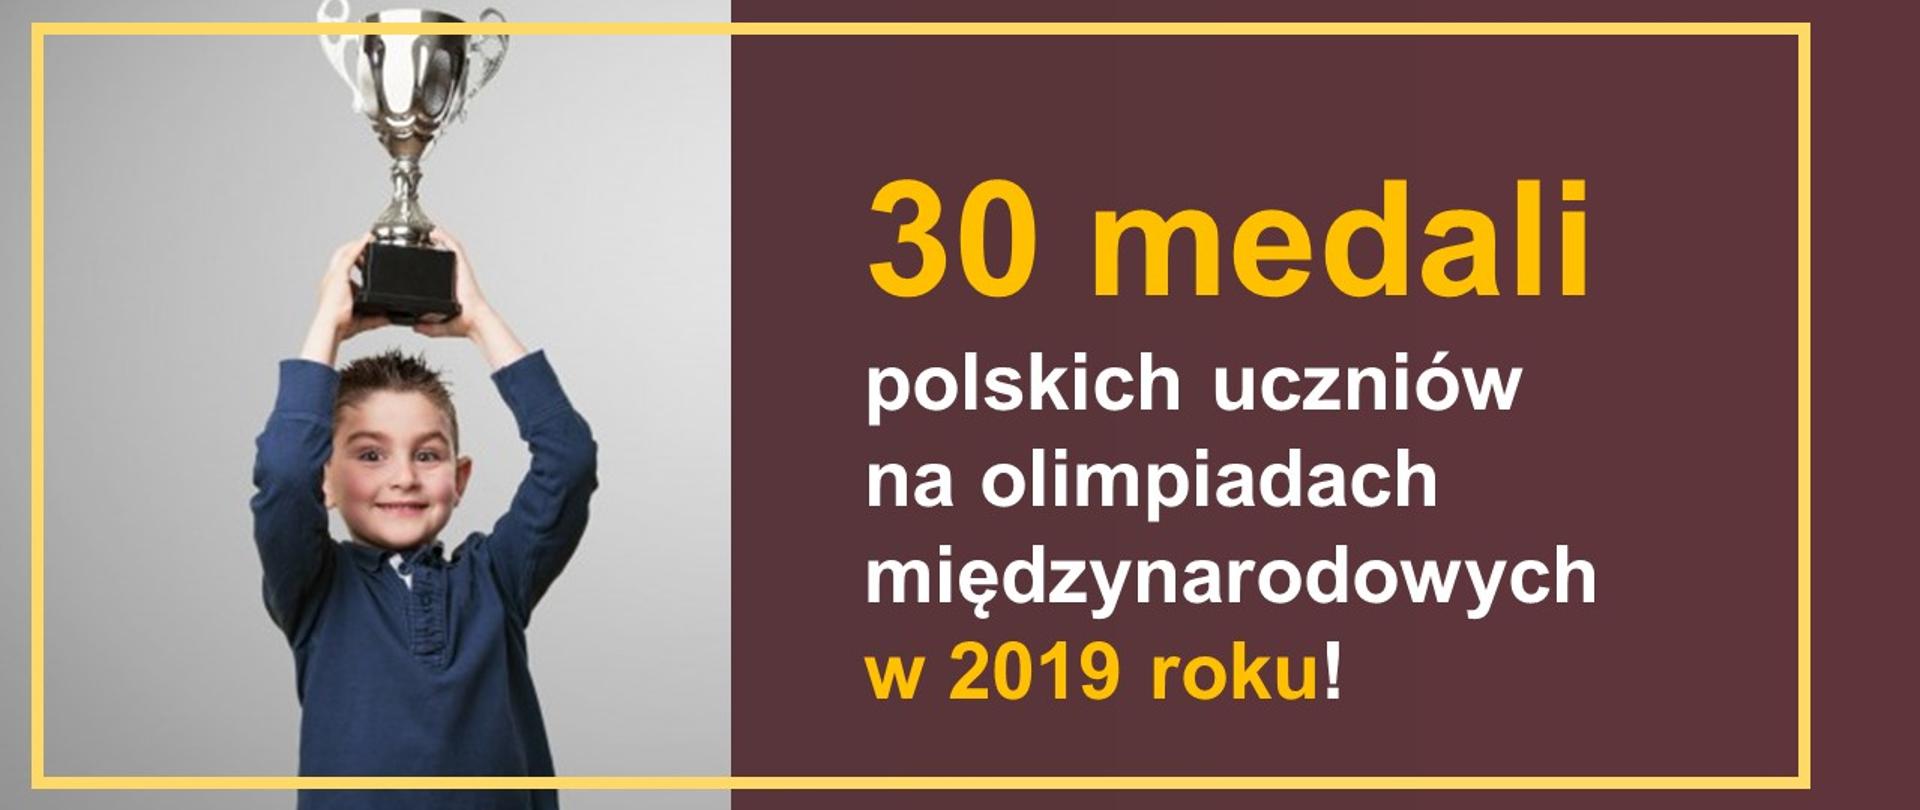 30 medali polskich uczniów na olimpiadach międzynarodowych